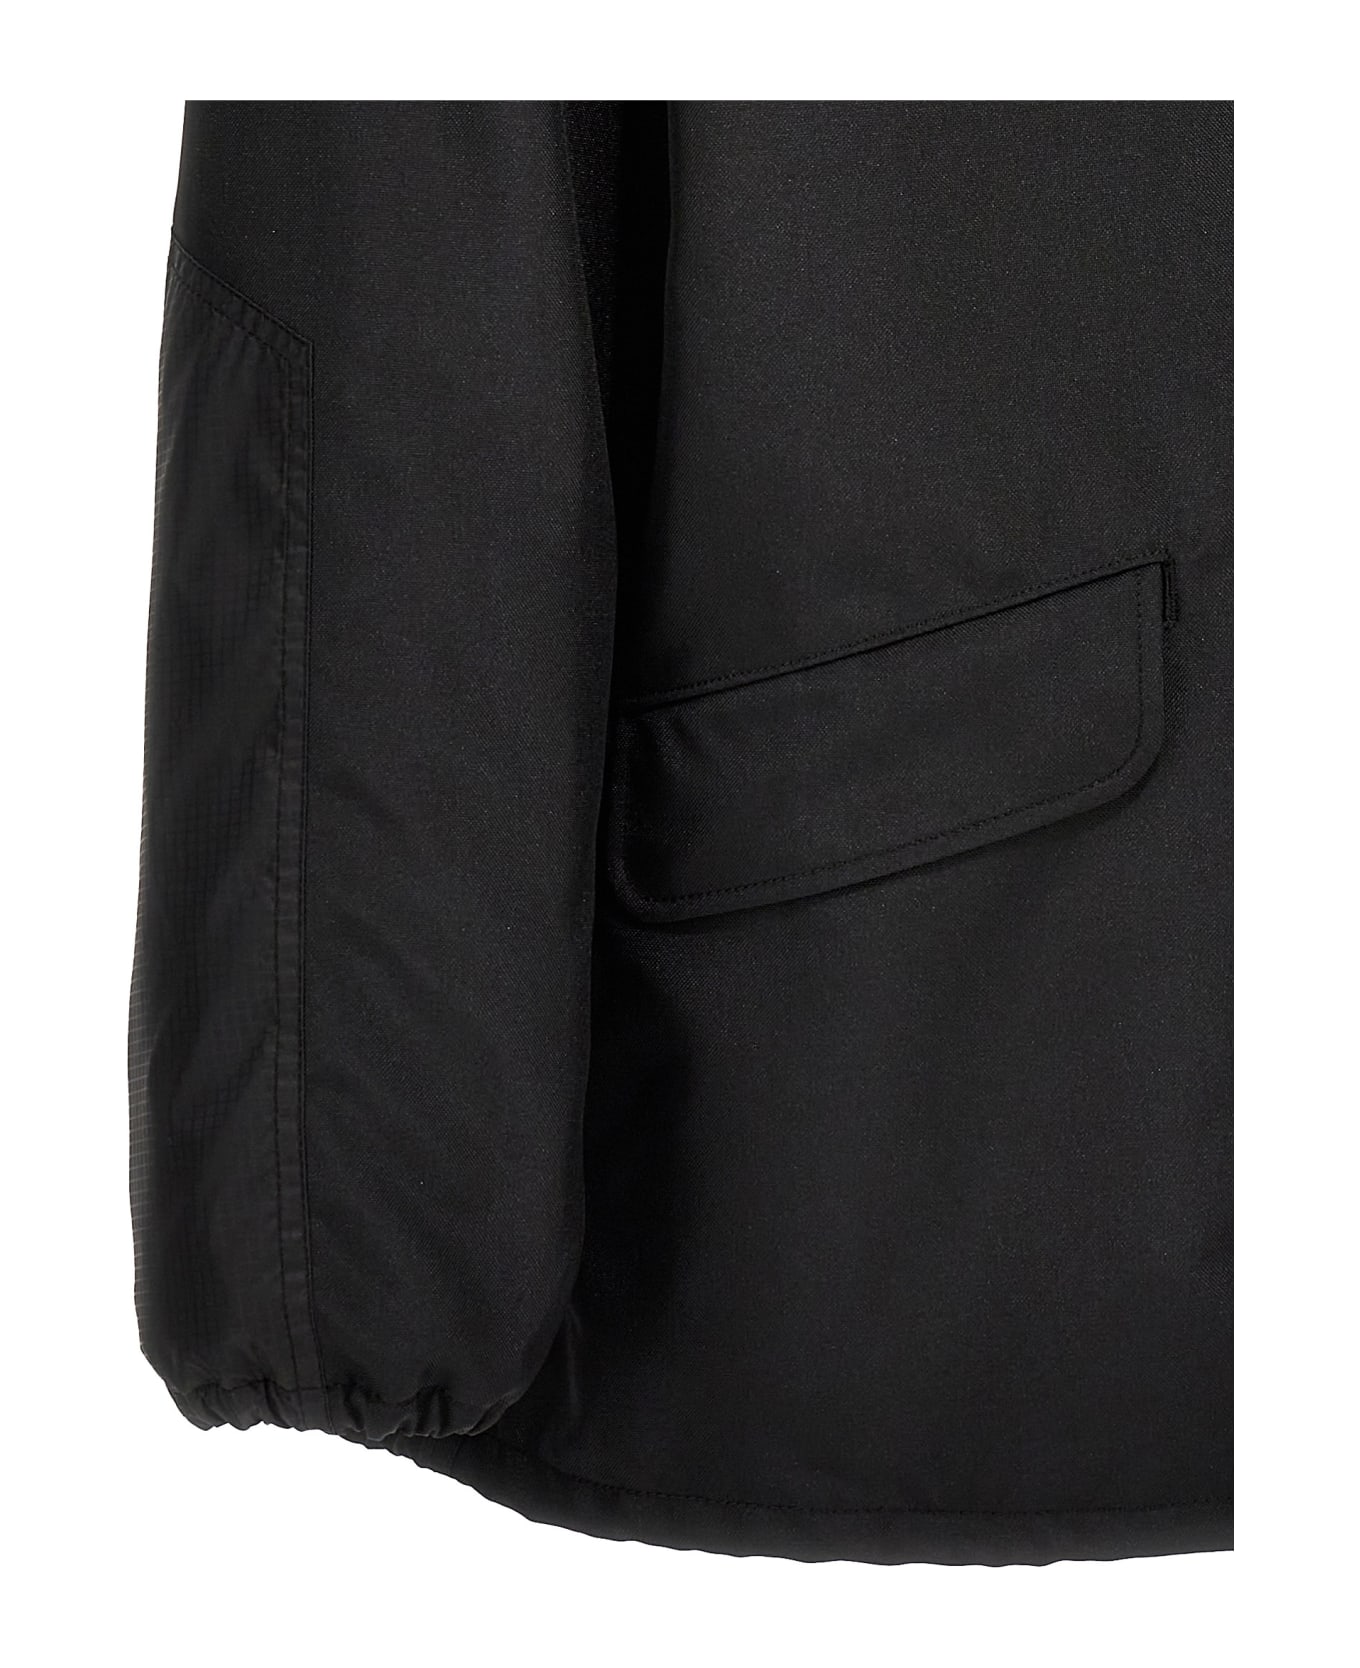 Comme des Garçons Homme Technical Fabric Blazer Jacket - Black  